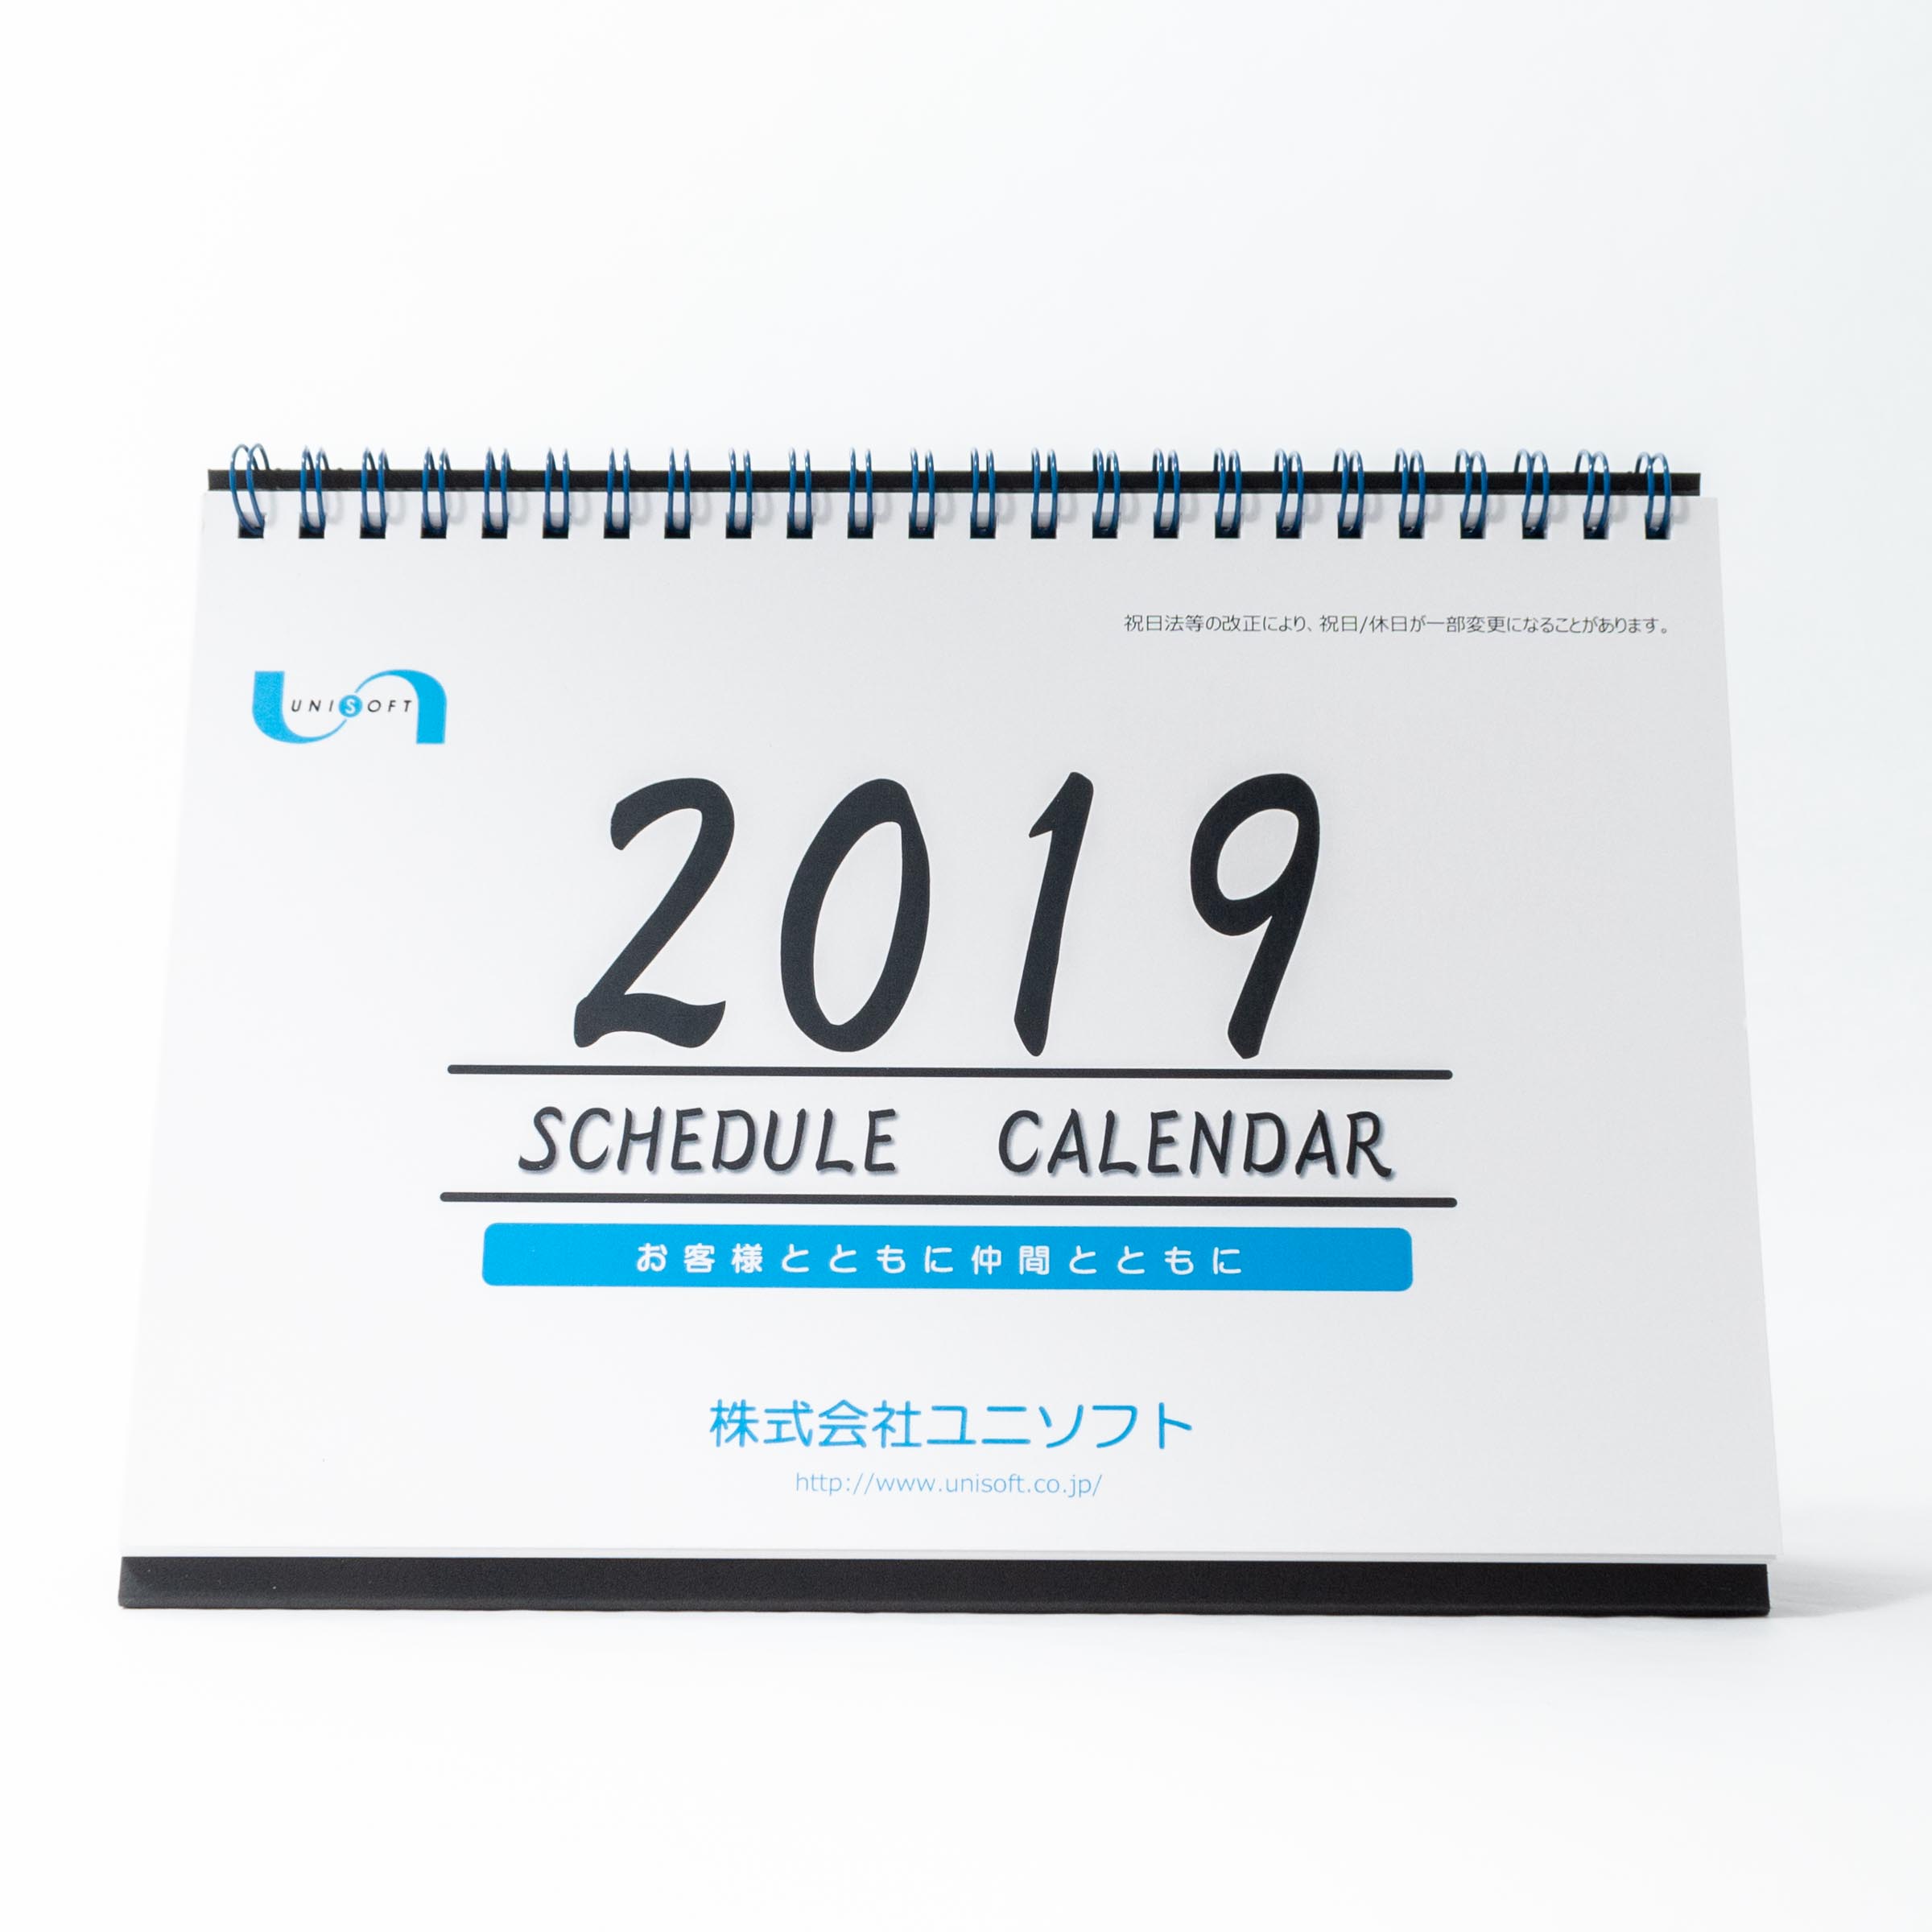 「株式会社ユニソフト 様」製作のオリジナルカレンダー